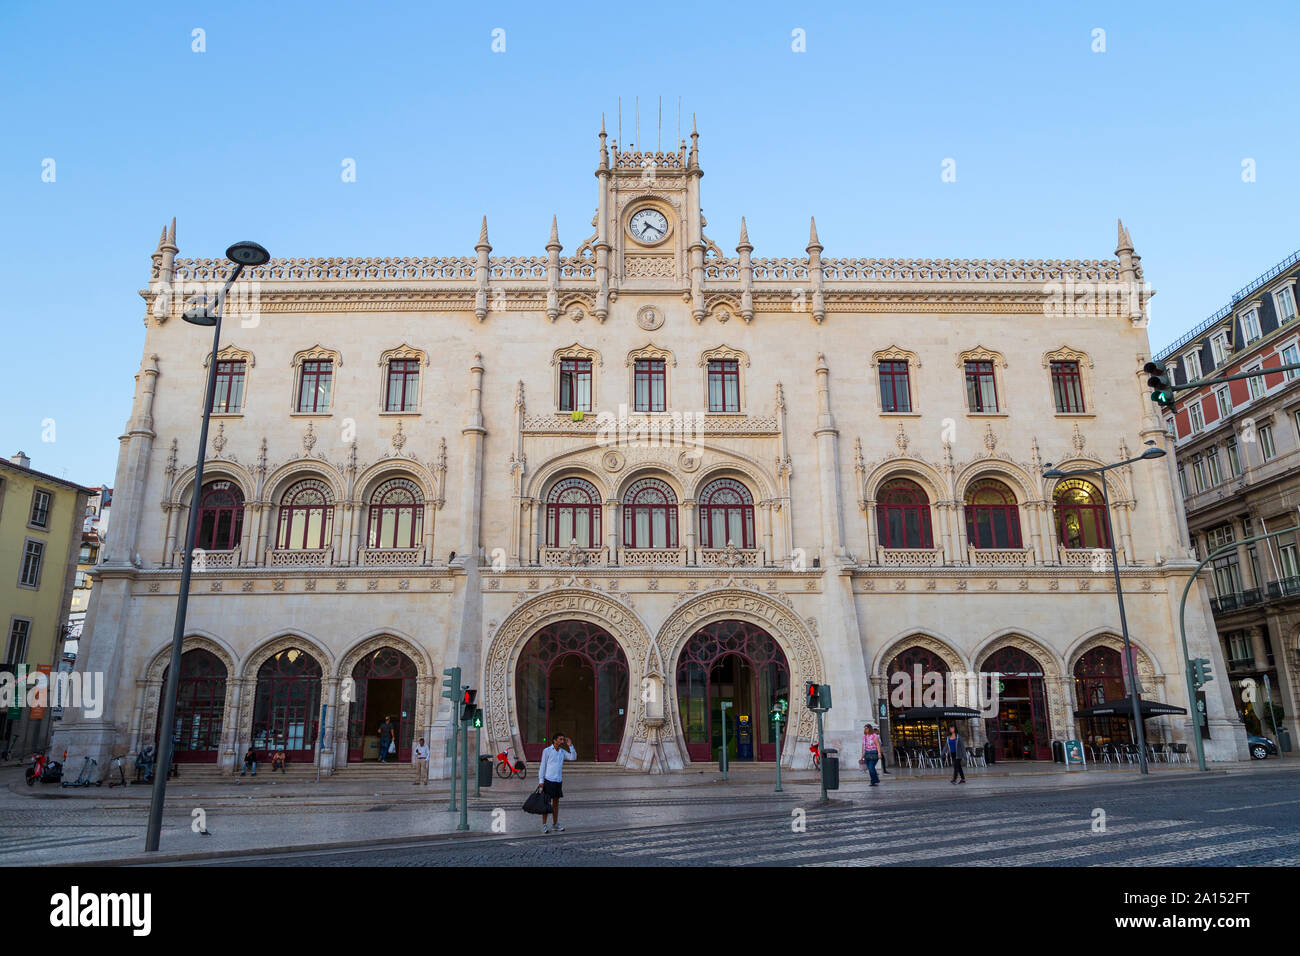 Vue avant de l Estacao do Rossio (gare Rossio) Immeuble de Lisbonne, Portugal, dans la matinée. Banque D'Images